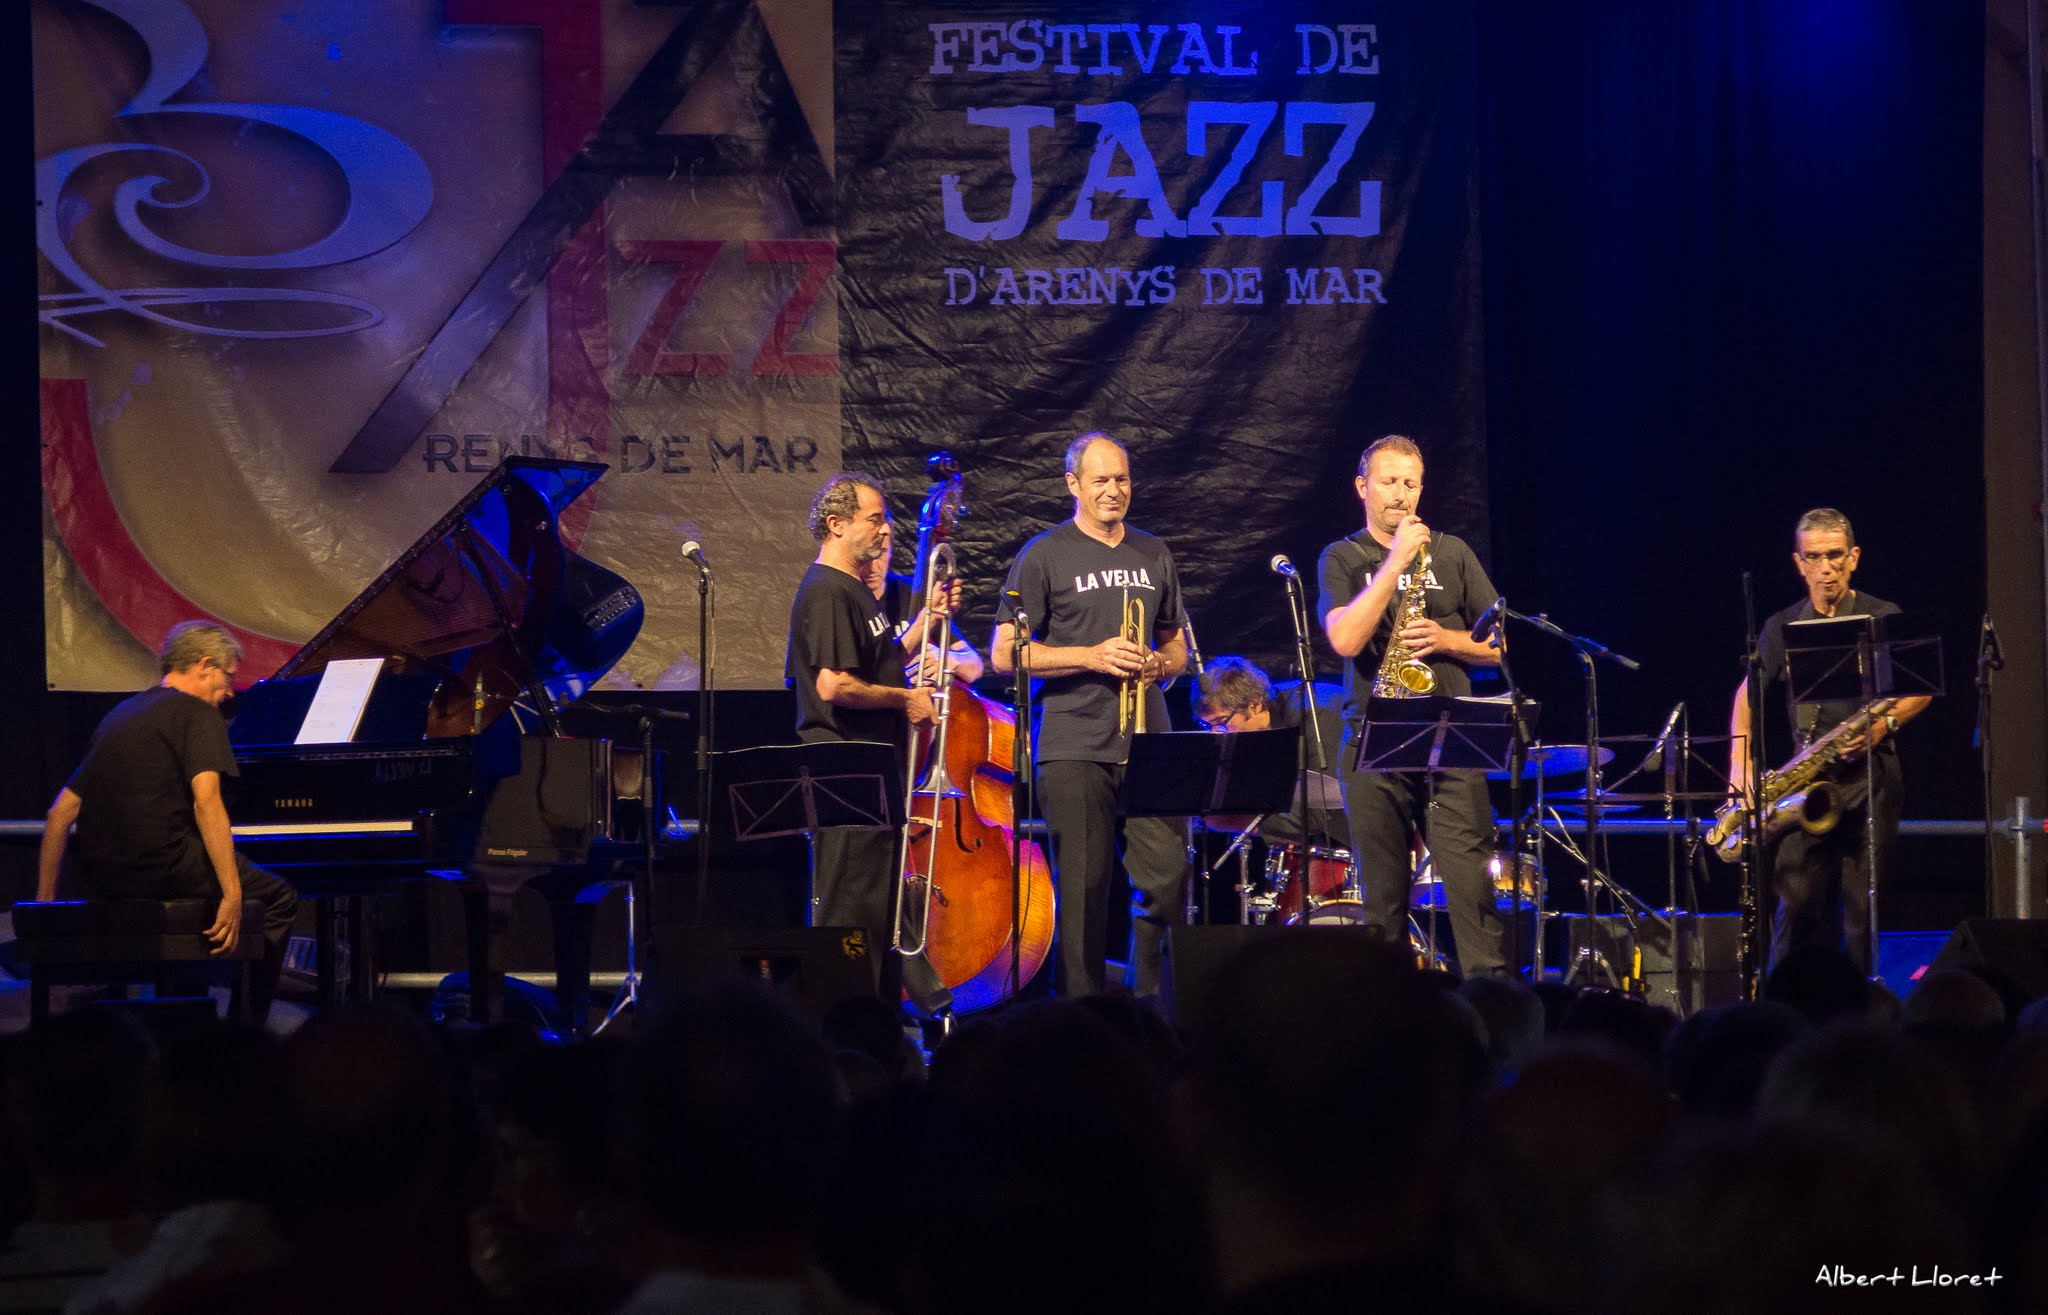 Imatges del 25 Festival de Jazz d'Arenys de Mar - 2016 - Foto 37026209